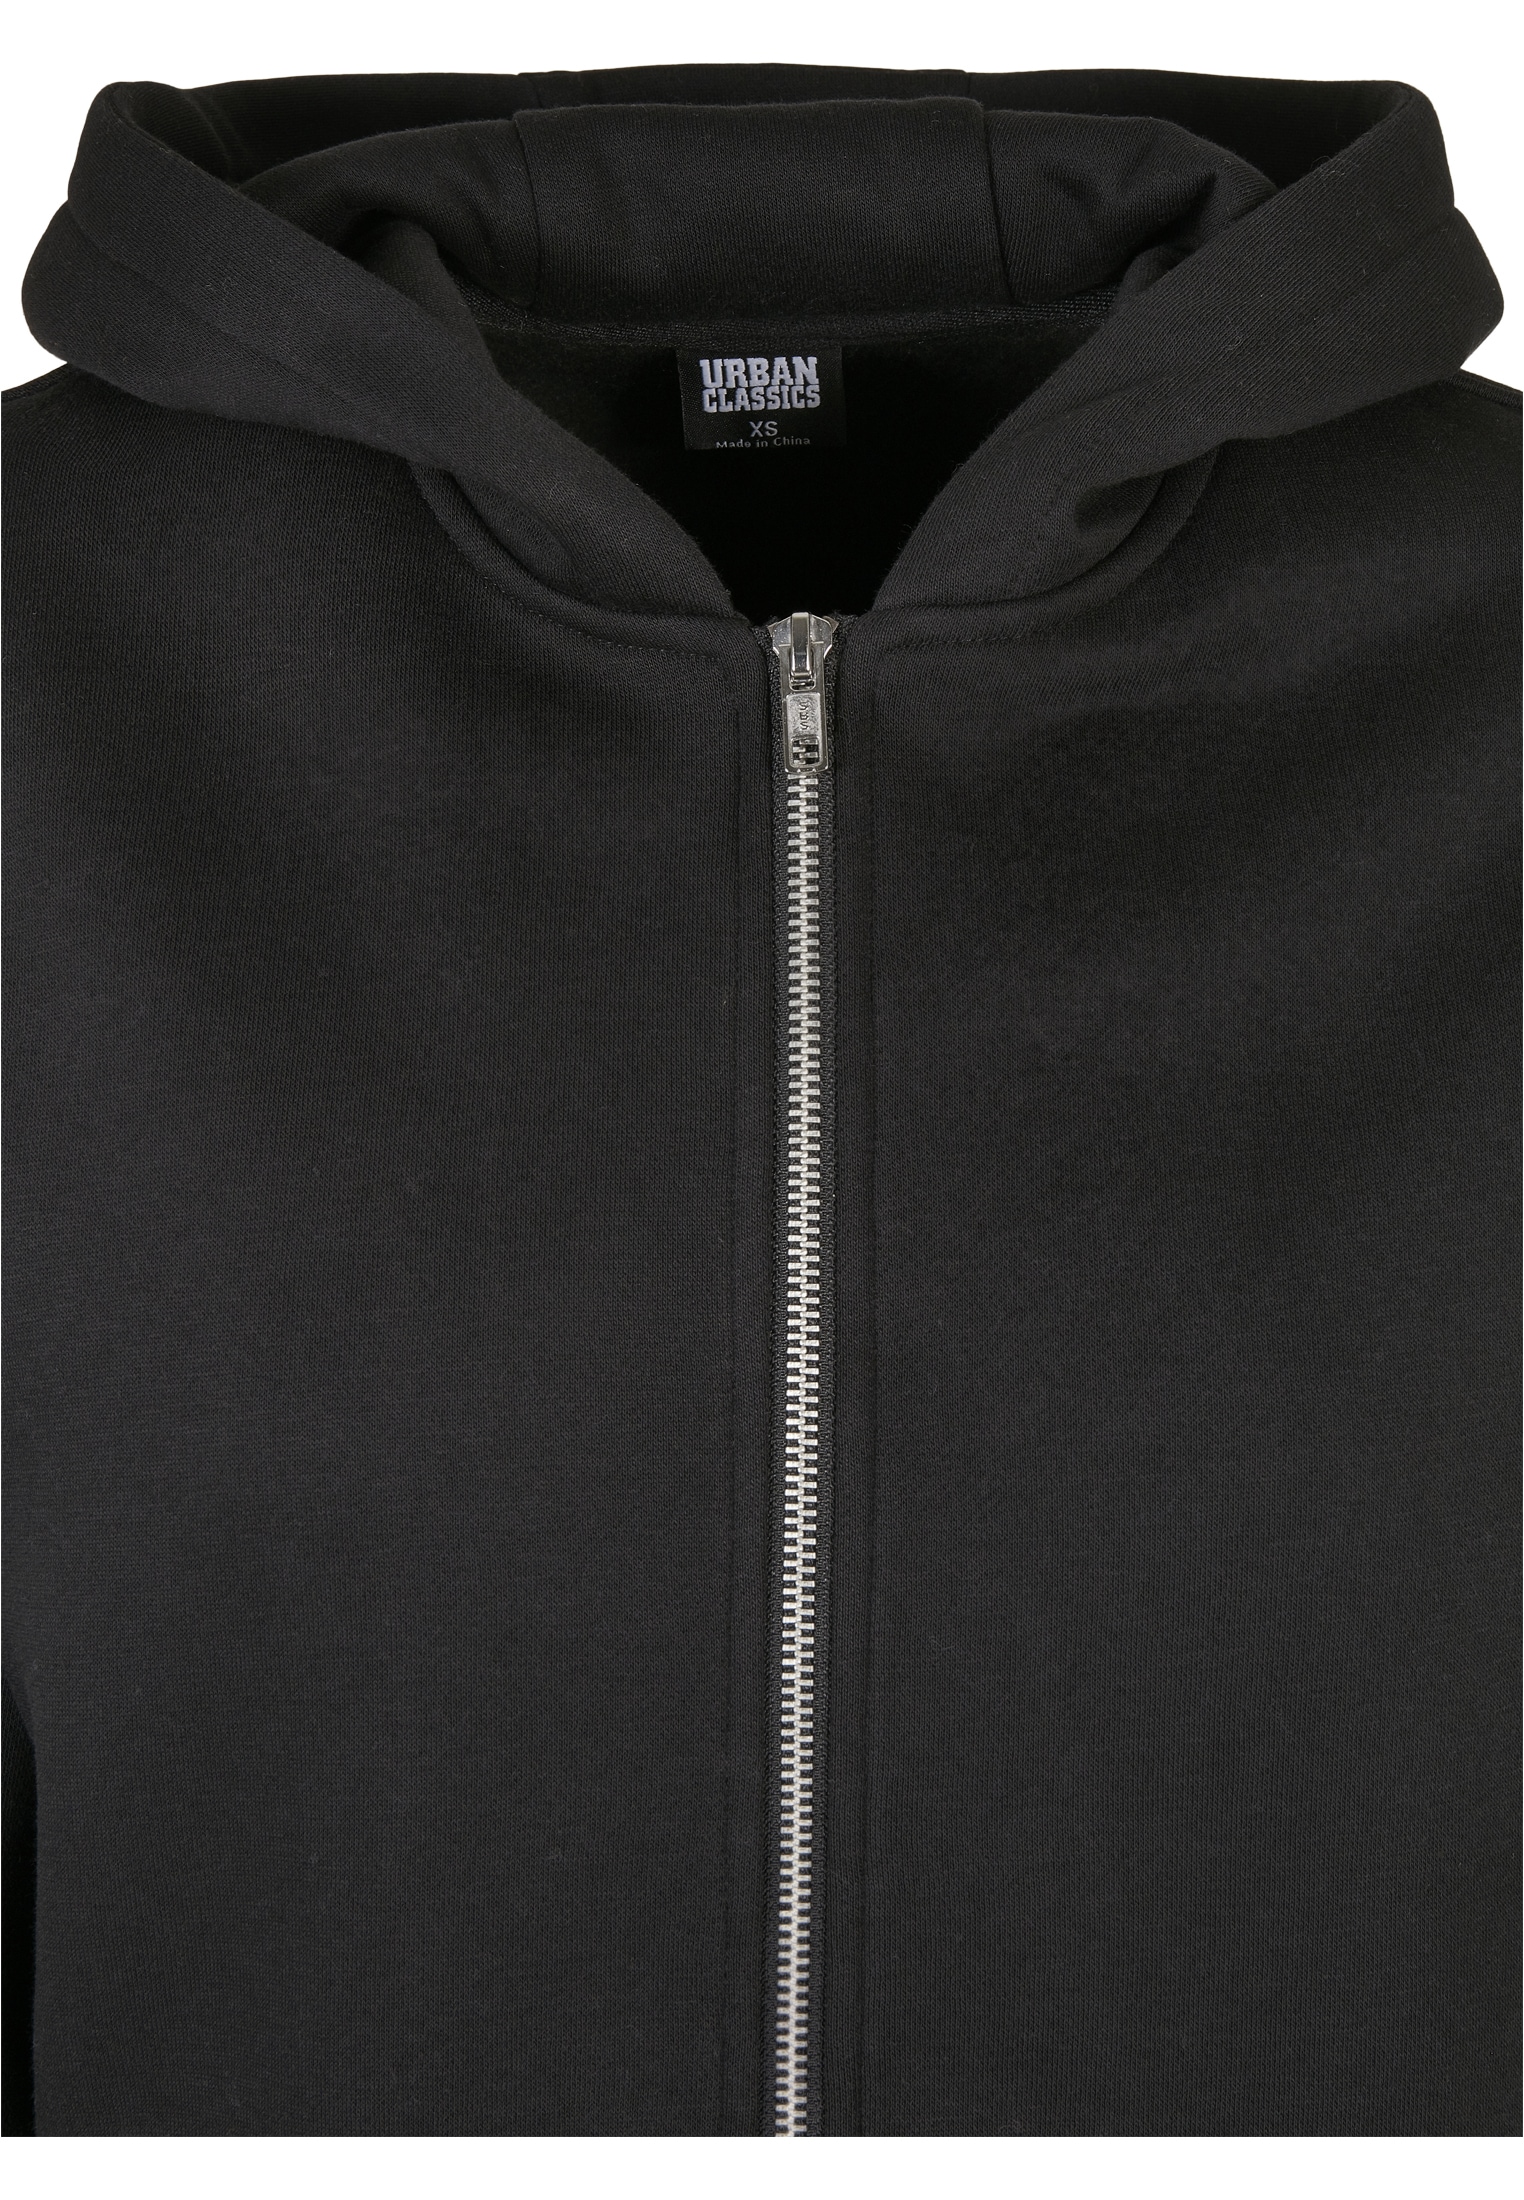 URBAN CLASSICS Sweatjacke (1 BAUR Zip kaufen | Jacket«, tlg.) für Short Ladies Oversized »Damen